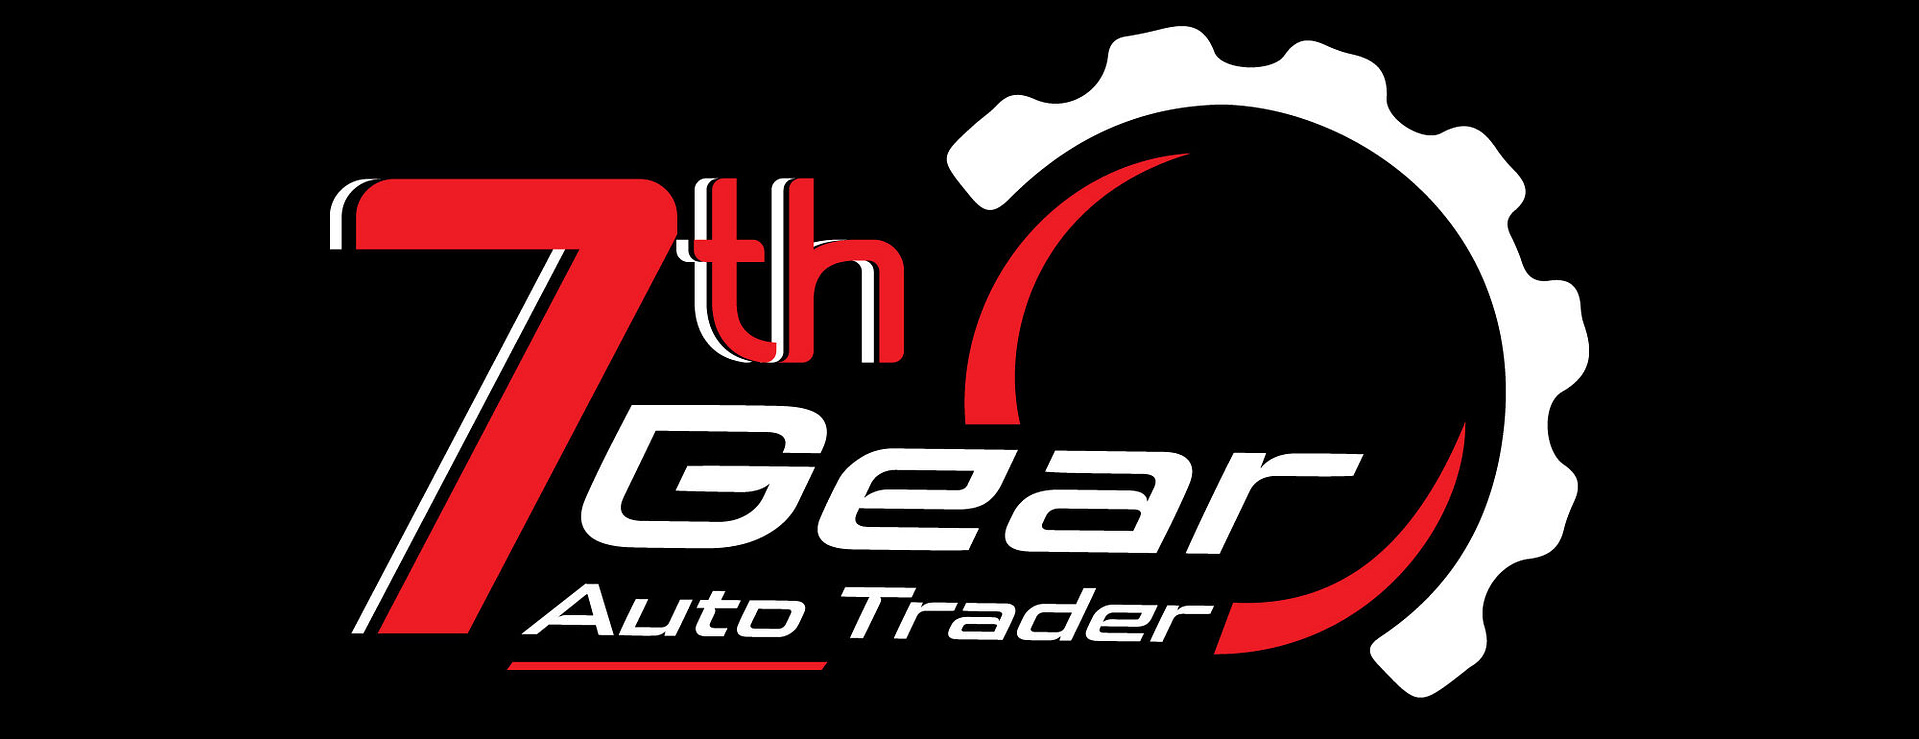 7th Gear Auto Trader